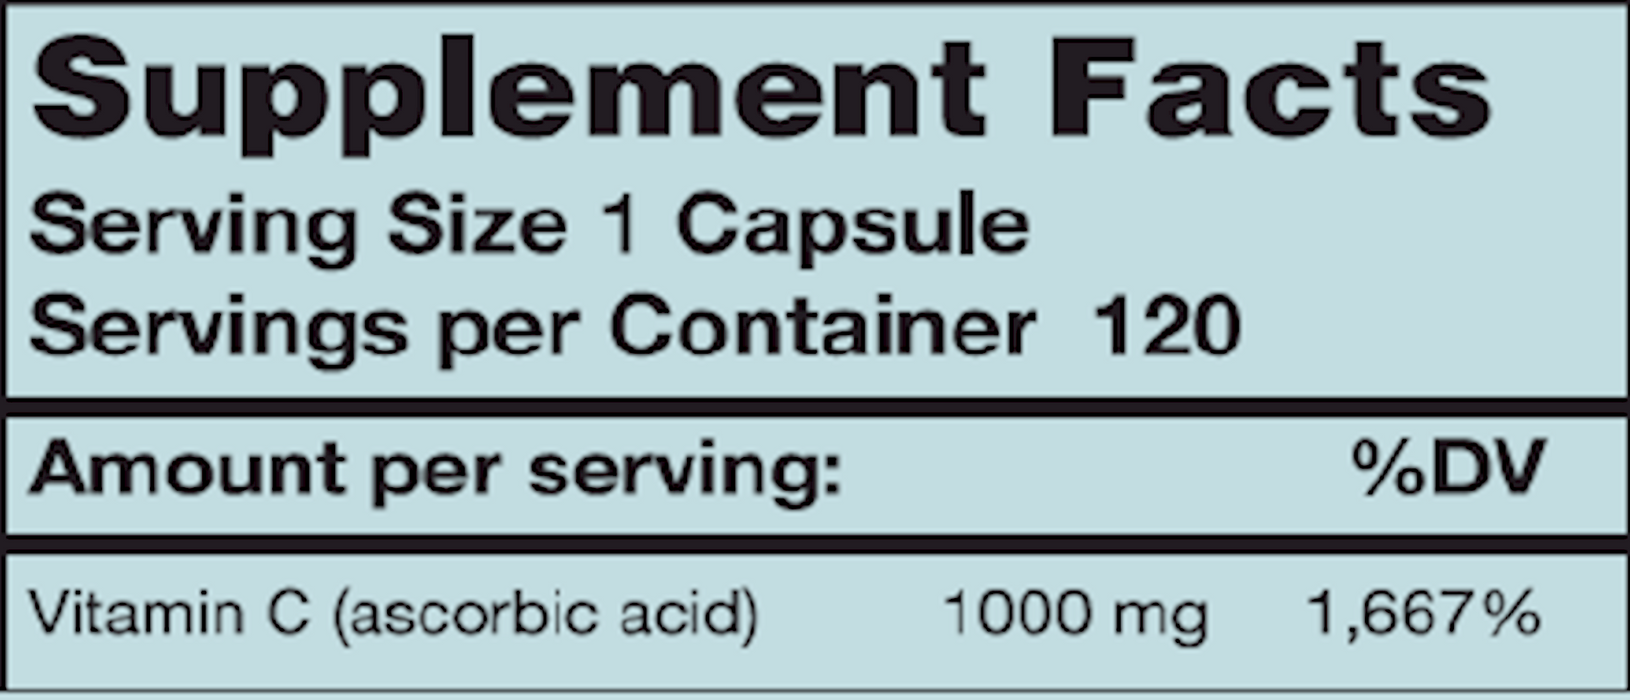 C-1000 1000 mg